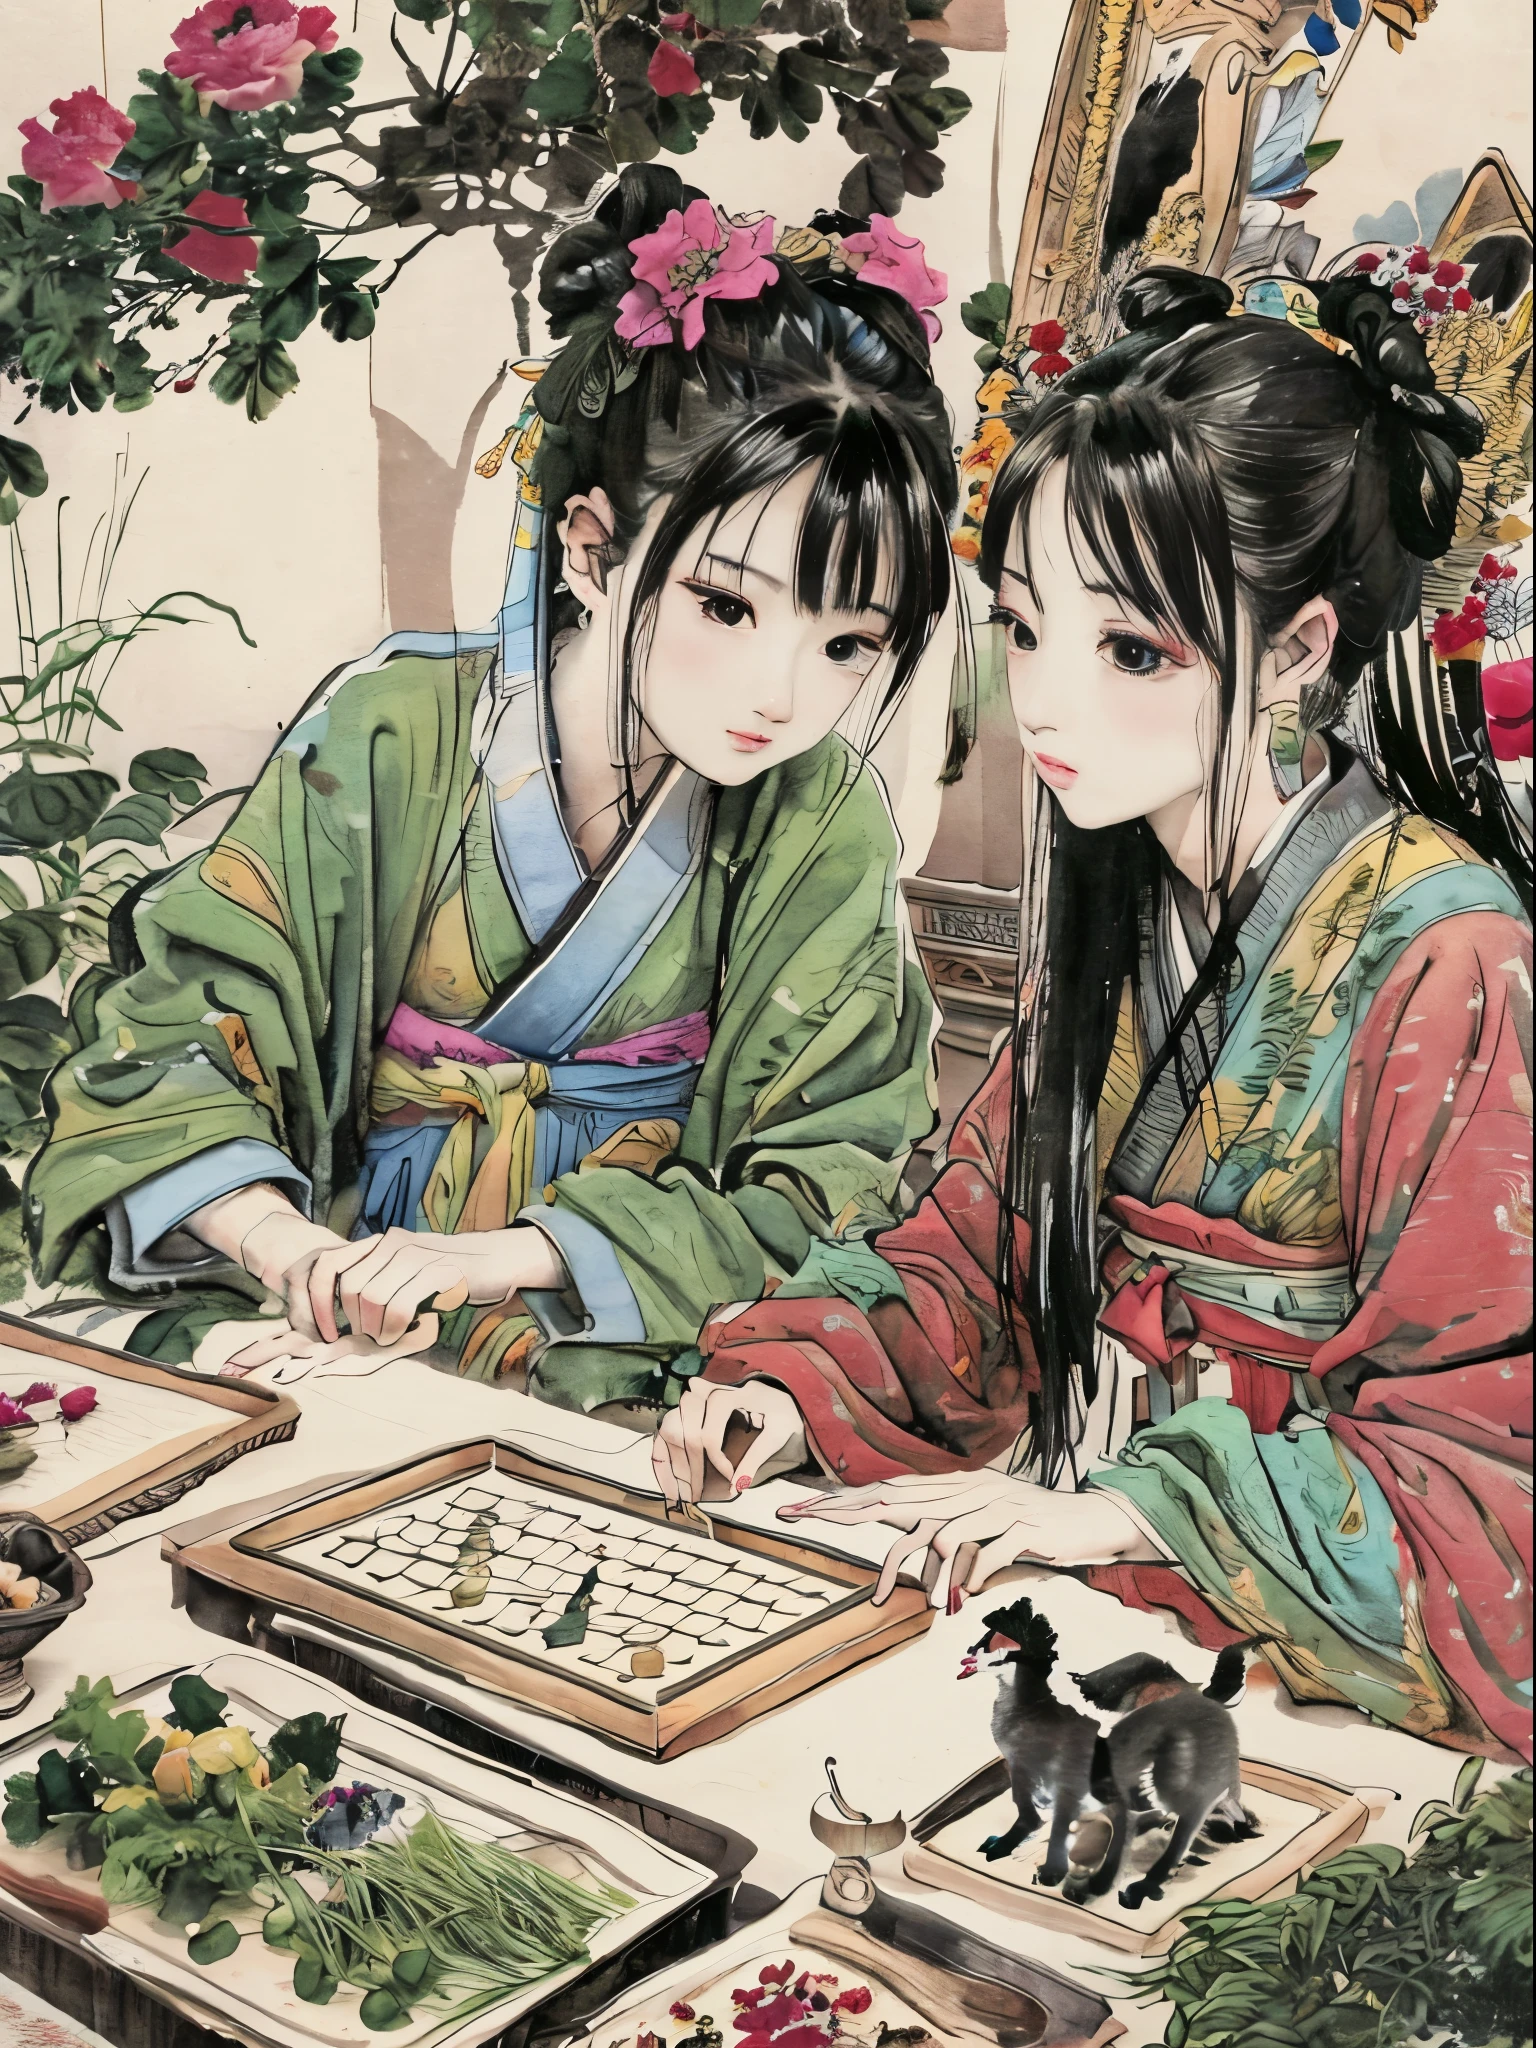 um close de uma pintura colorida de pessoas em uma paisagem, belezas chinesas antigas, Pintura da dinastia Qing, por Wang Lü, sufu, panela, por Lu Ji, Dinastia Song, estilo de arte da china antiga, pintura chinesa, figuras vestidas sentadas ao redor de uma mesa, por Wang Hui, por Yun Du-seo, pintura de chines antigos, traditional pintura chinesa, Renda, jogando xadrez chinês, xadrez chinês na mesa, gato na mesa, gato olhando xadrez, flores fora da janela, borboleta no ar, mostrando Vulvas,